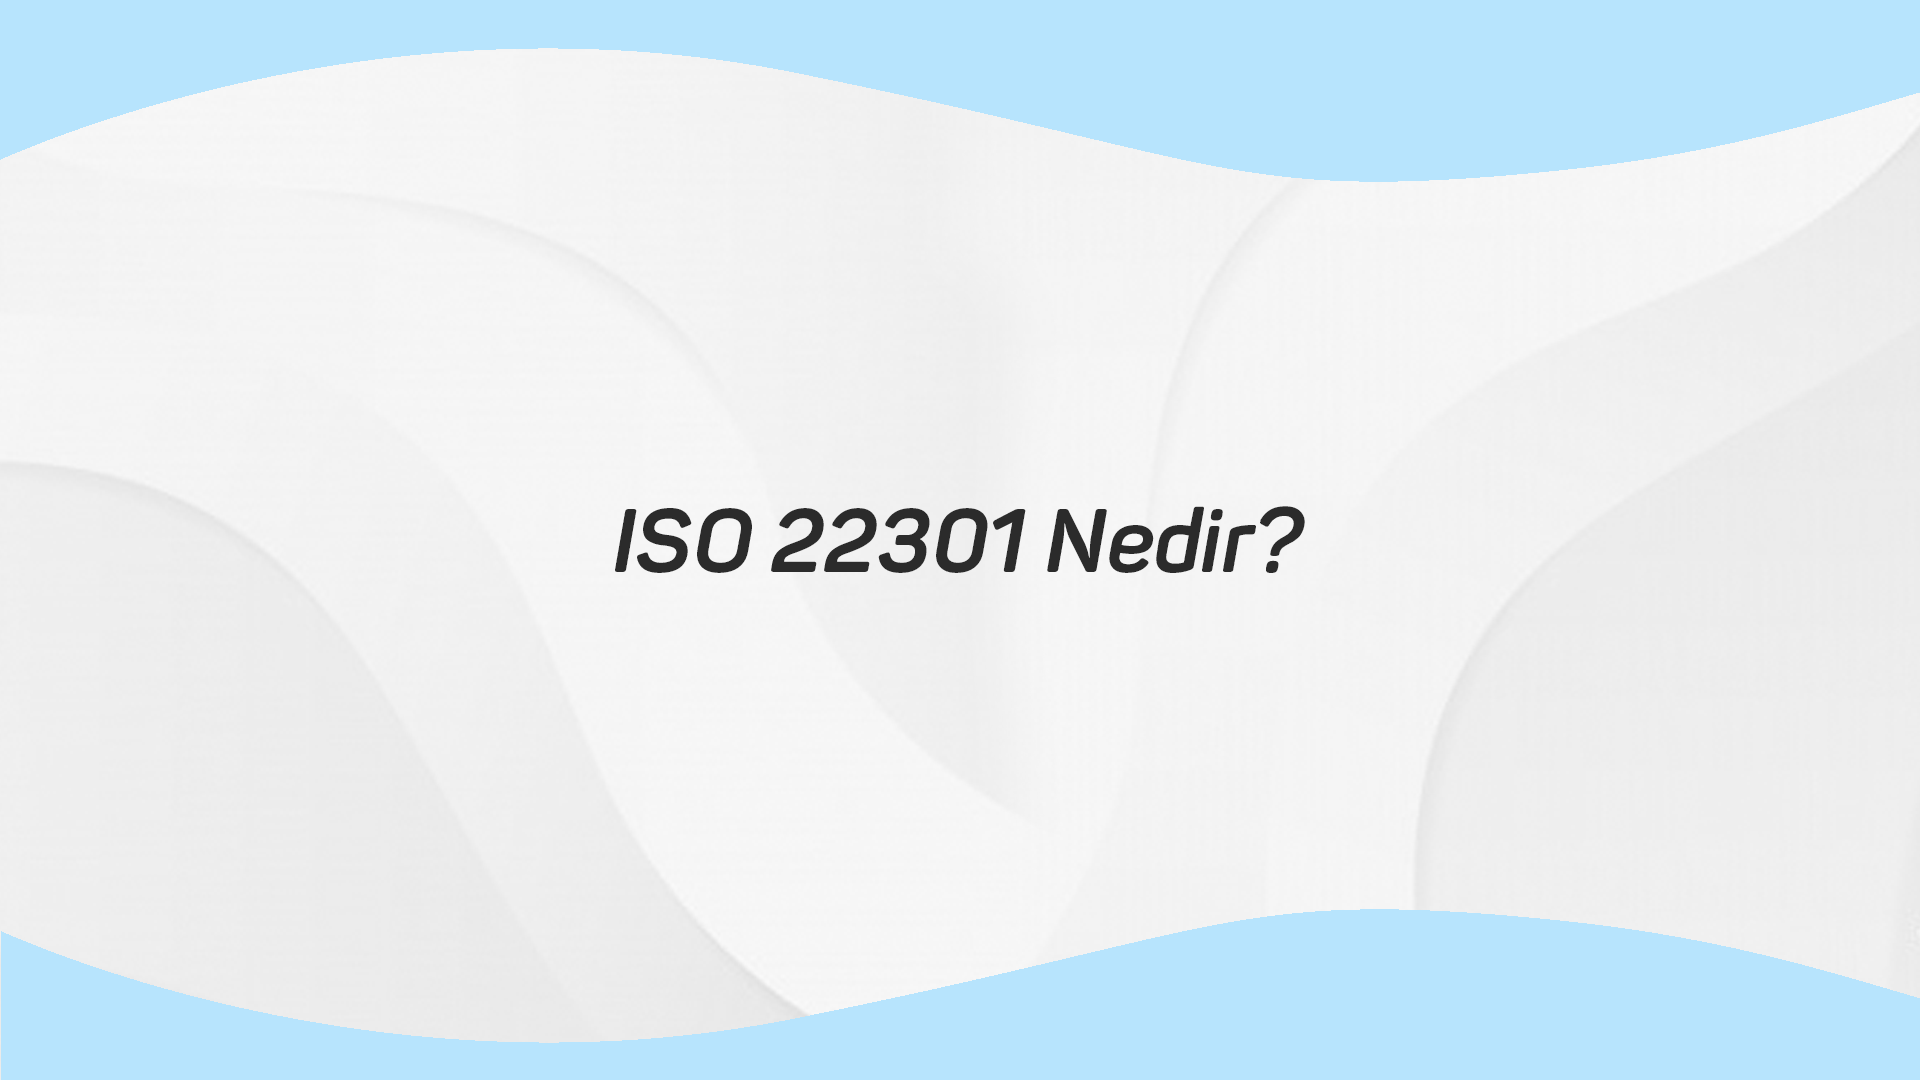 ISO 22301 Nedir?